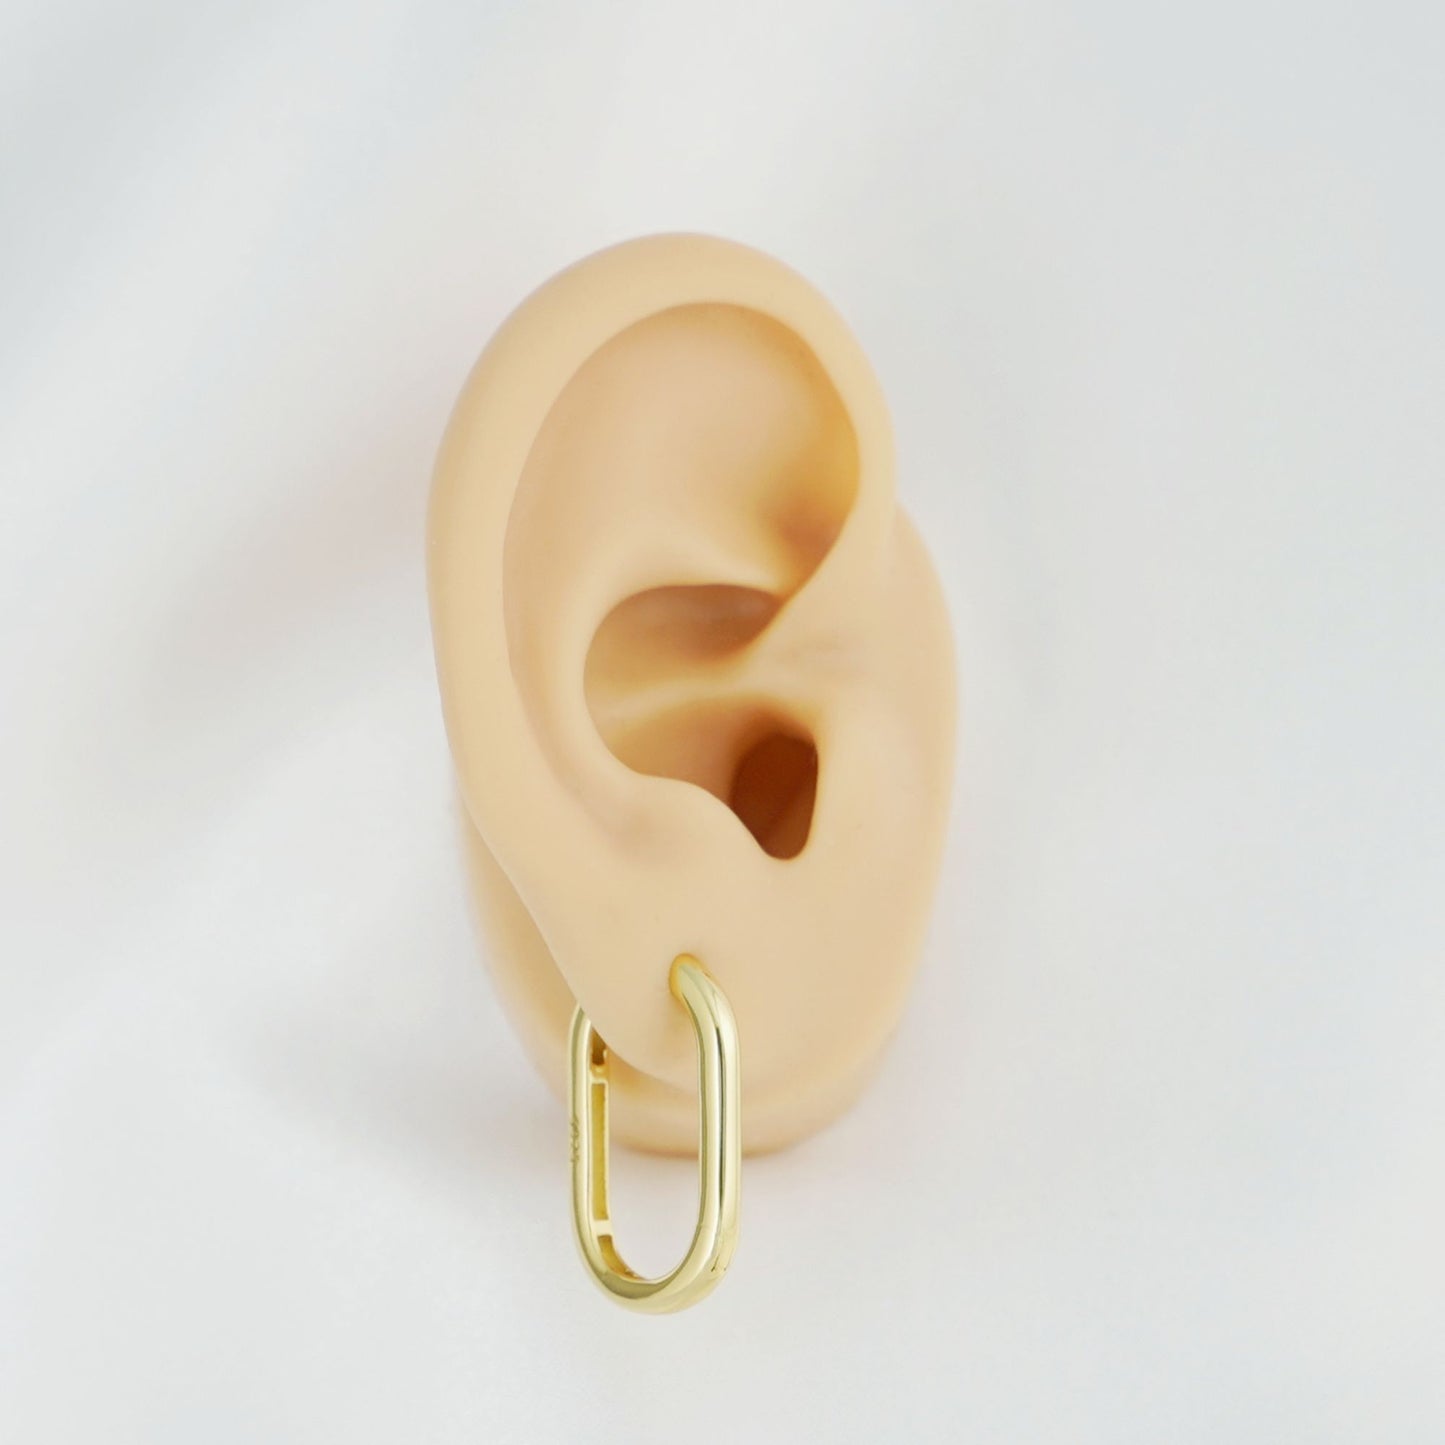 26mm 18K Gold Oval Hoop Earrings with Sterling Silver Backing - sugarkittenlondon